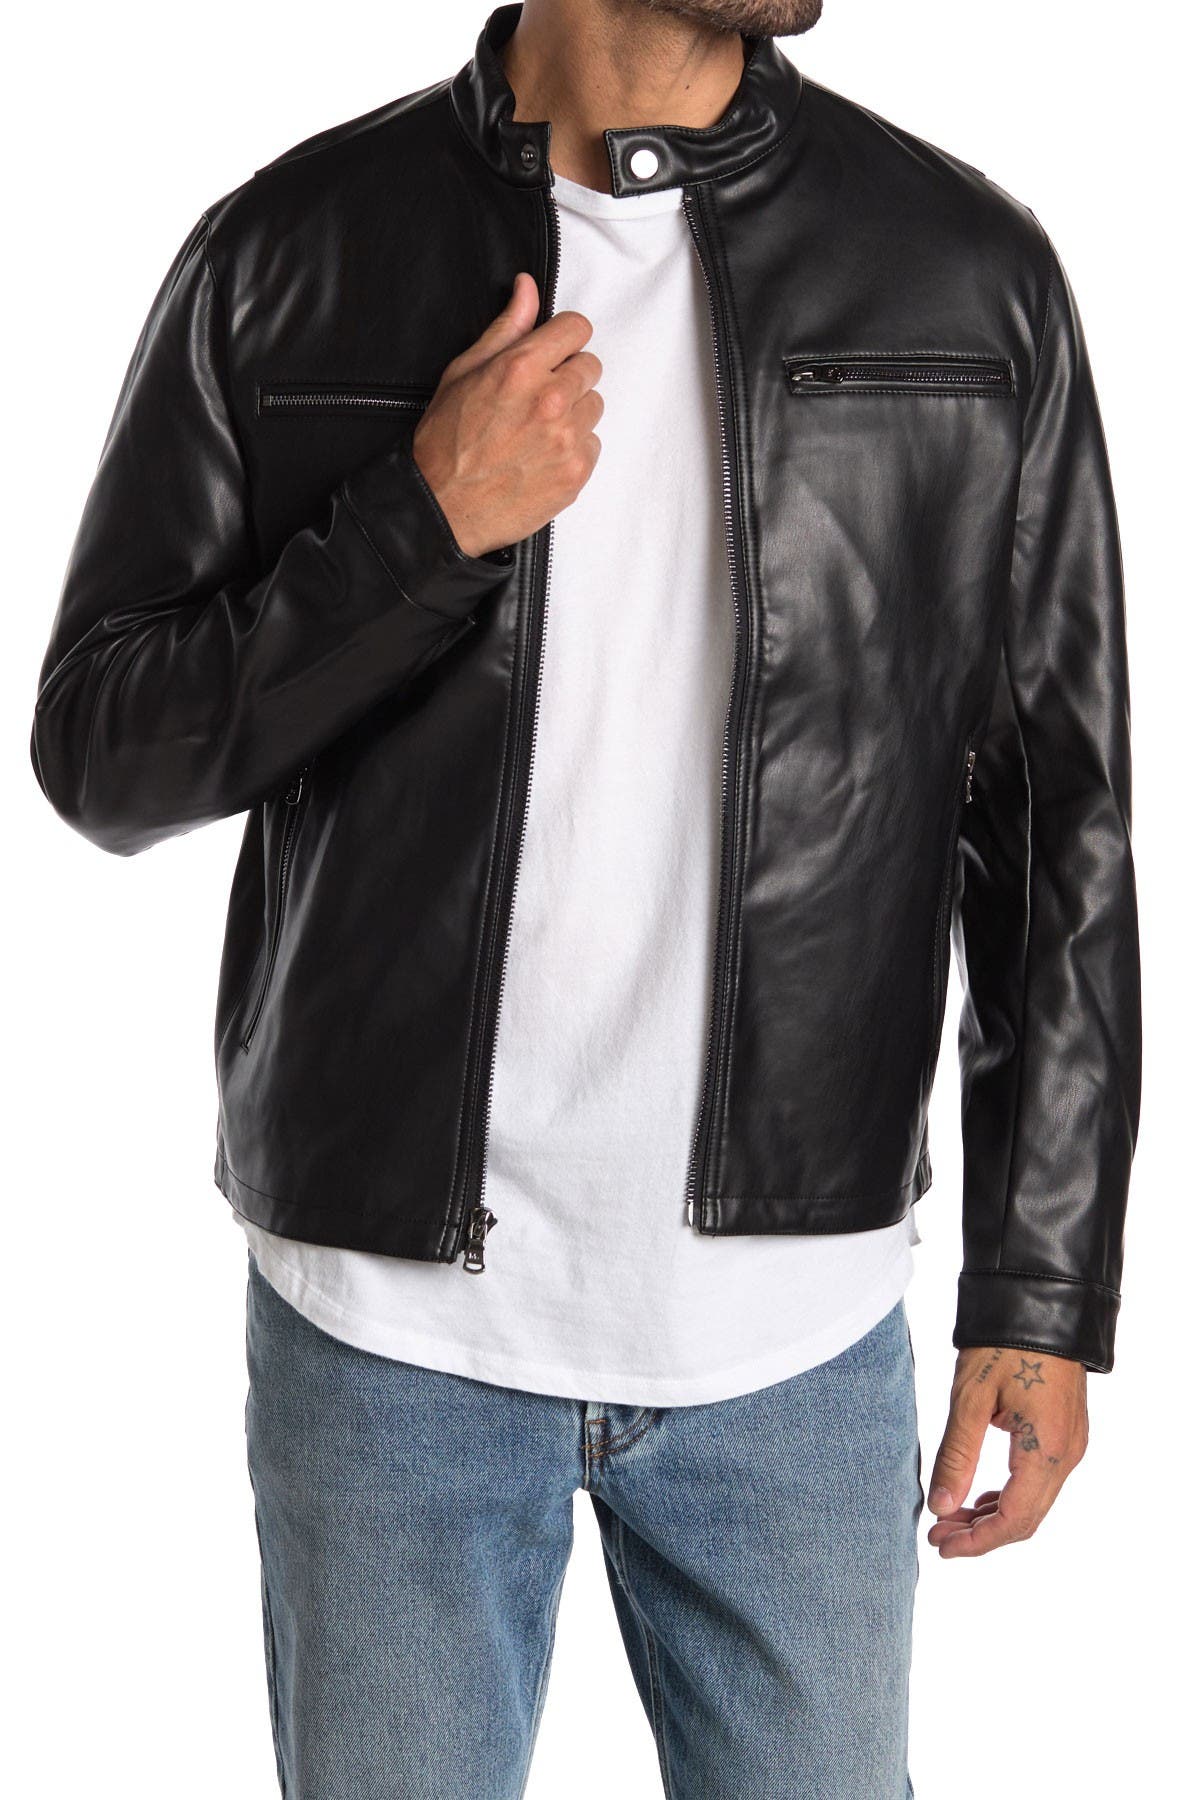 michael kors faux leather jacket mens